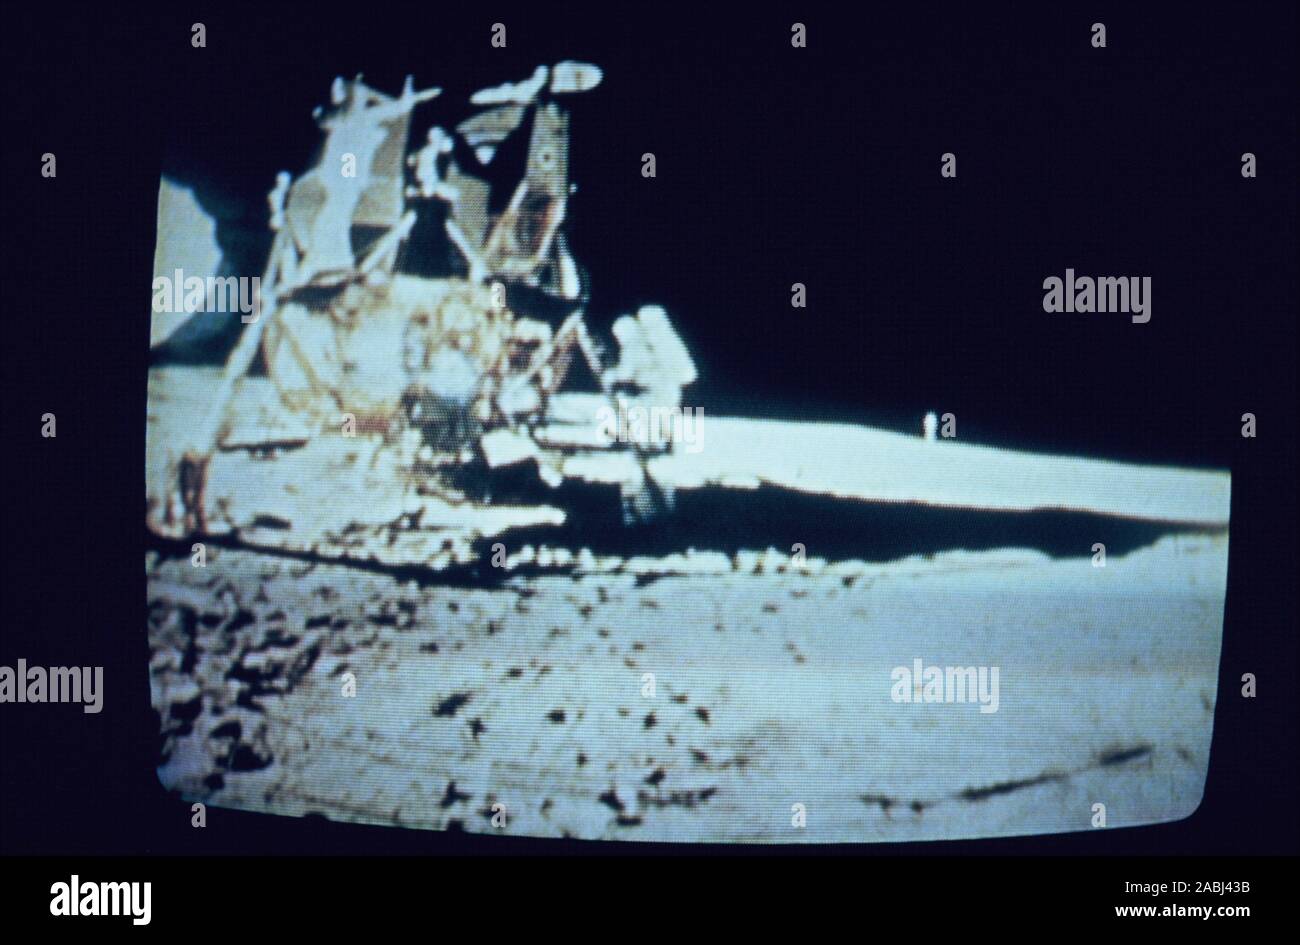 Teleclip - Apollo 11 Buzz Aldrin, Leiter der Mondlandefähre - geschossen von Neil Armstrong - Foto direkt vom TV-Bildschirm ca. 1969/72 Stockfoto